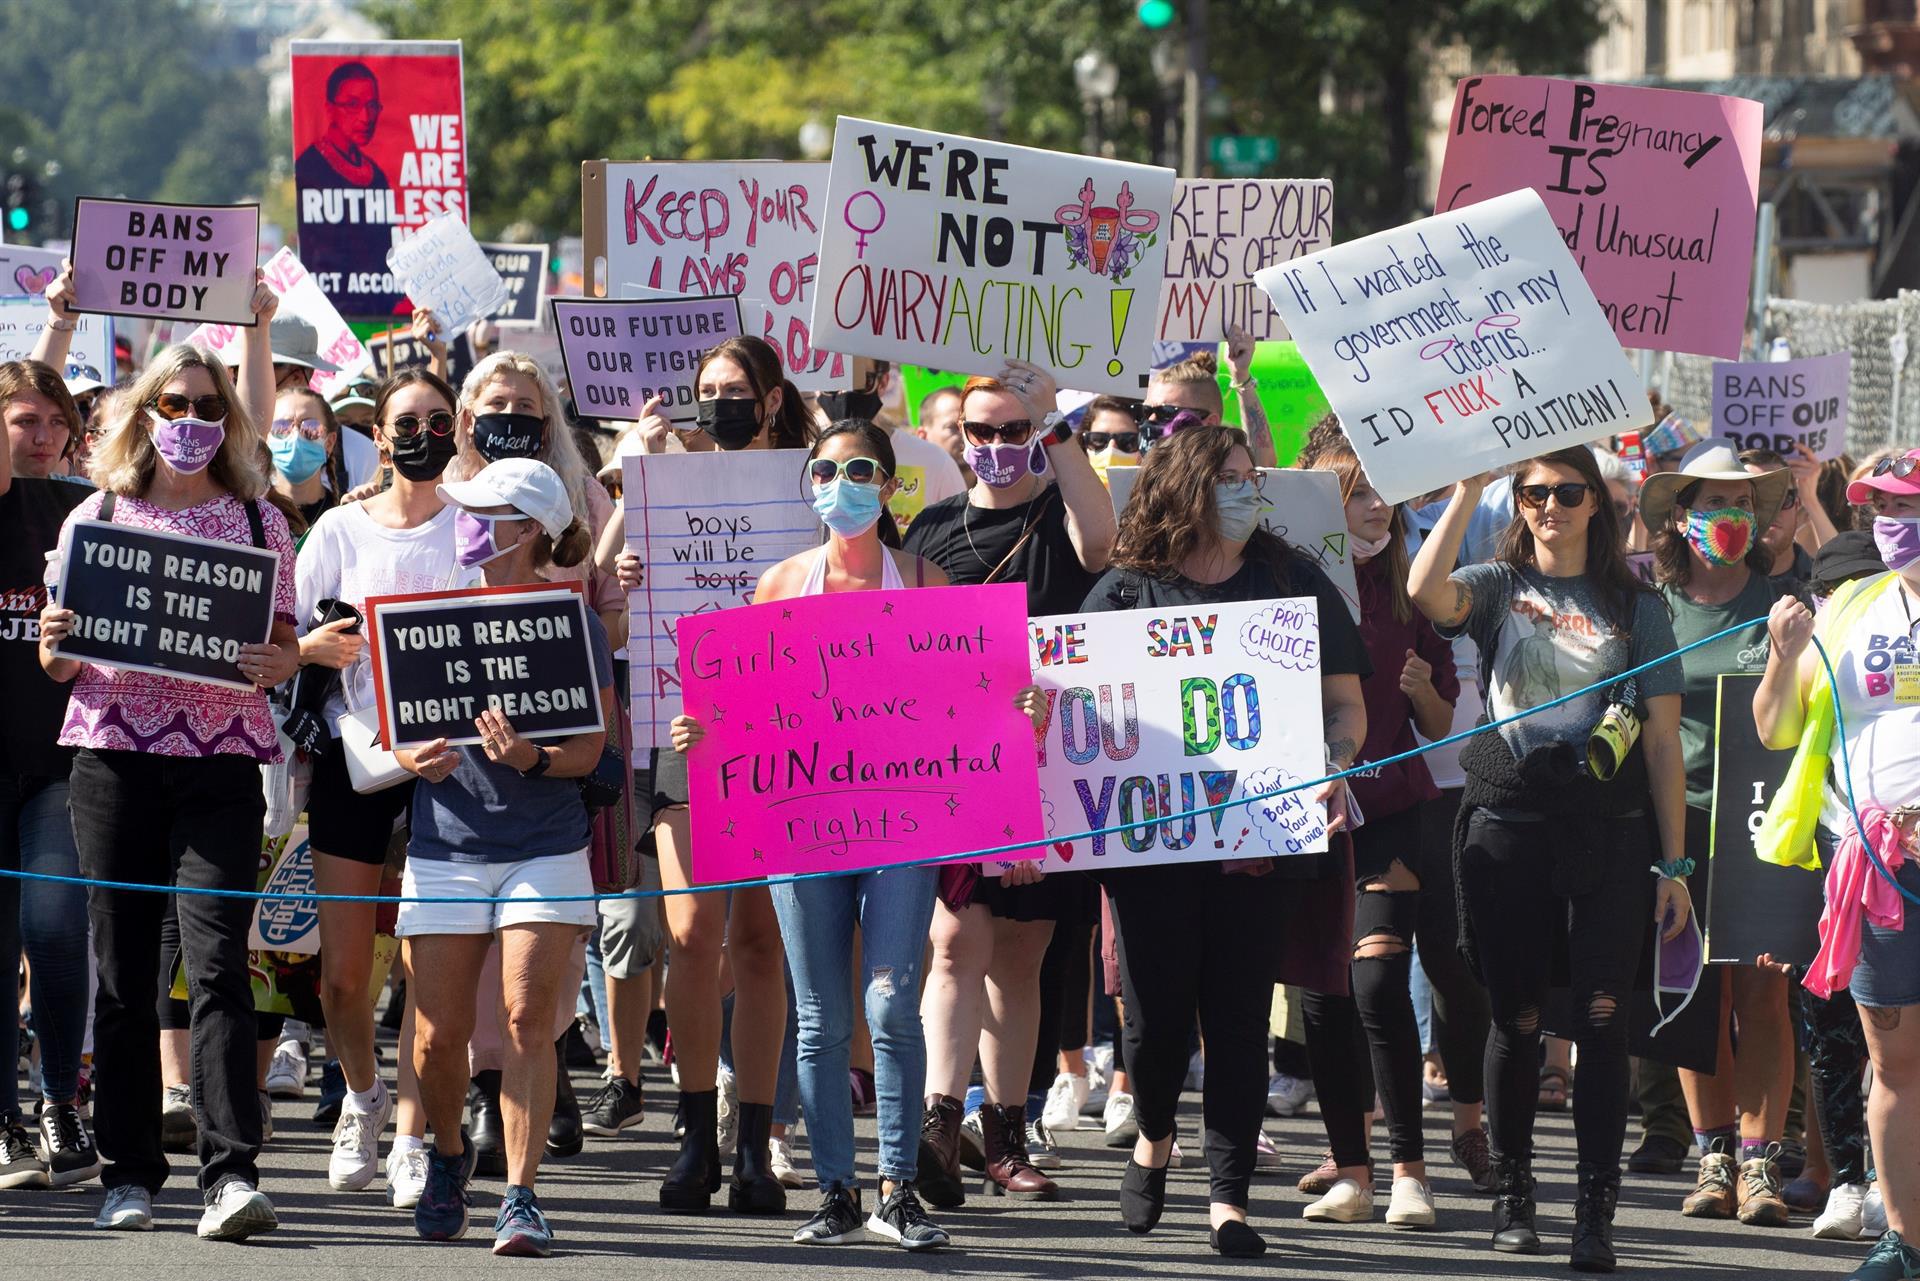 La manifestación se celebra un mes después de que entrara en vigor una ley en Texas que prohíbe los abortos después de seis semanas de embarazo incluso en casos de violación o incesto. EFE/ MICHAEL REYNOLDS